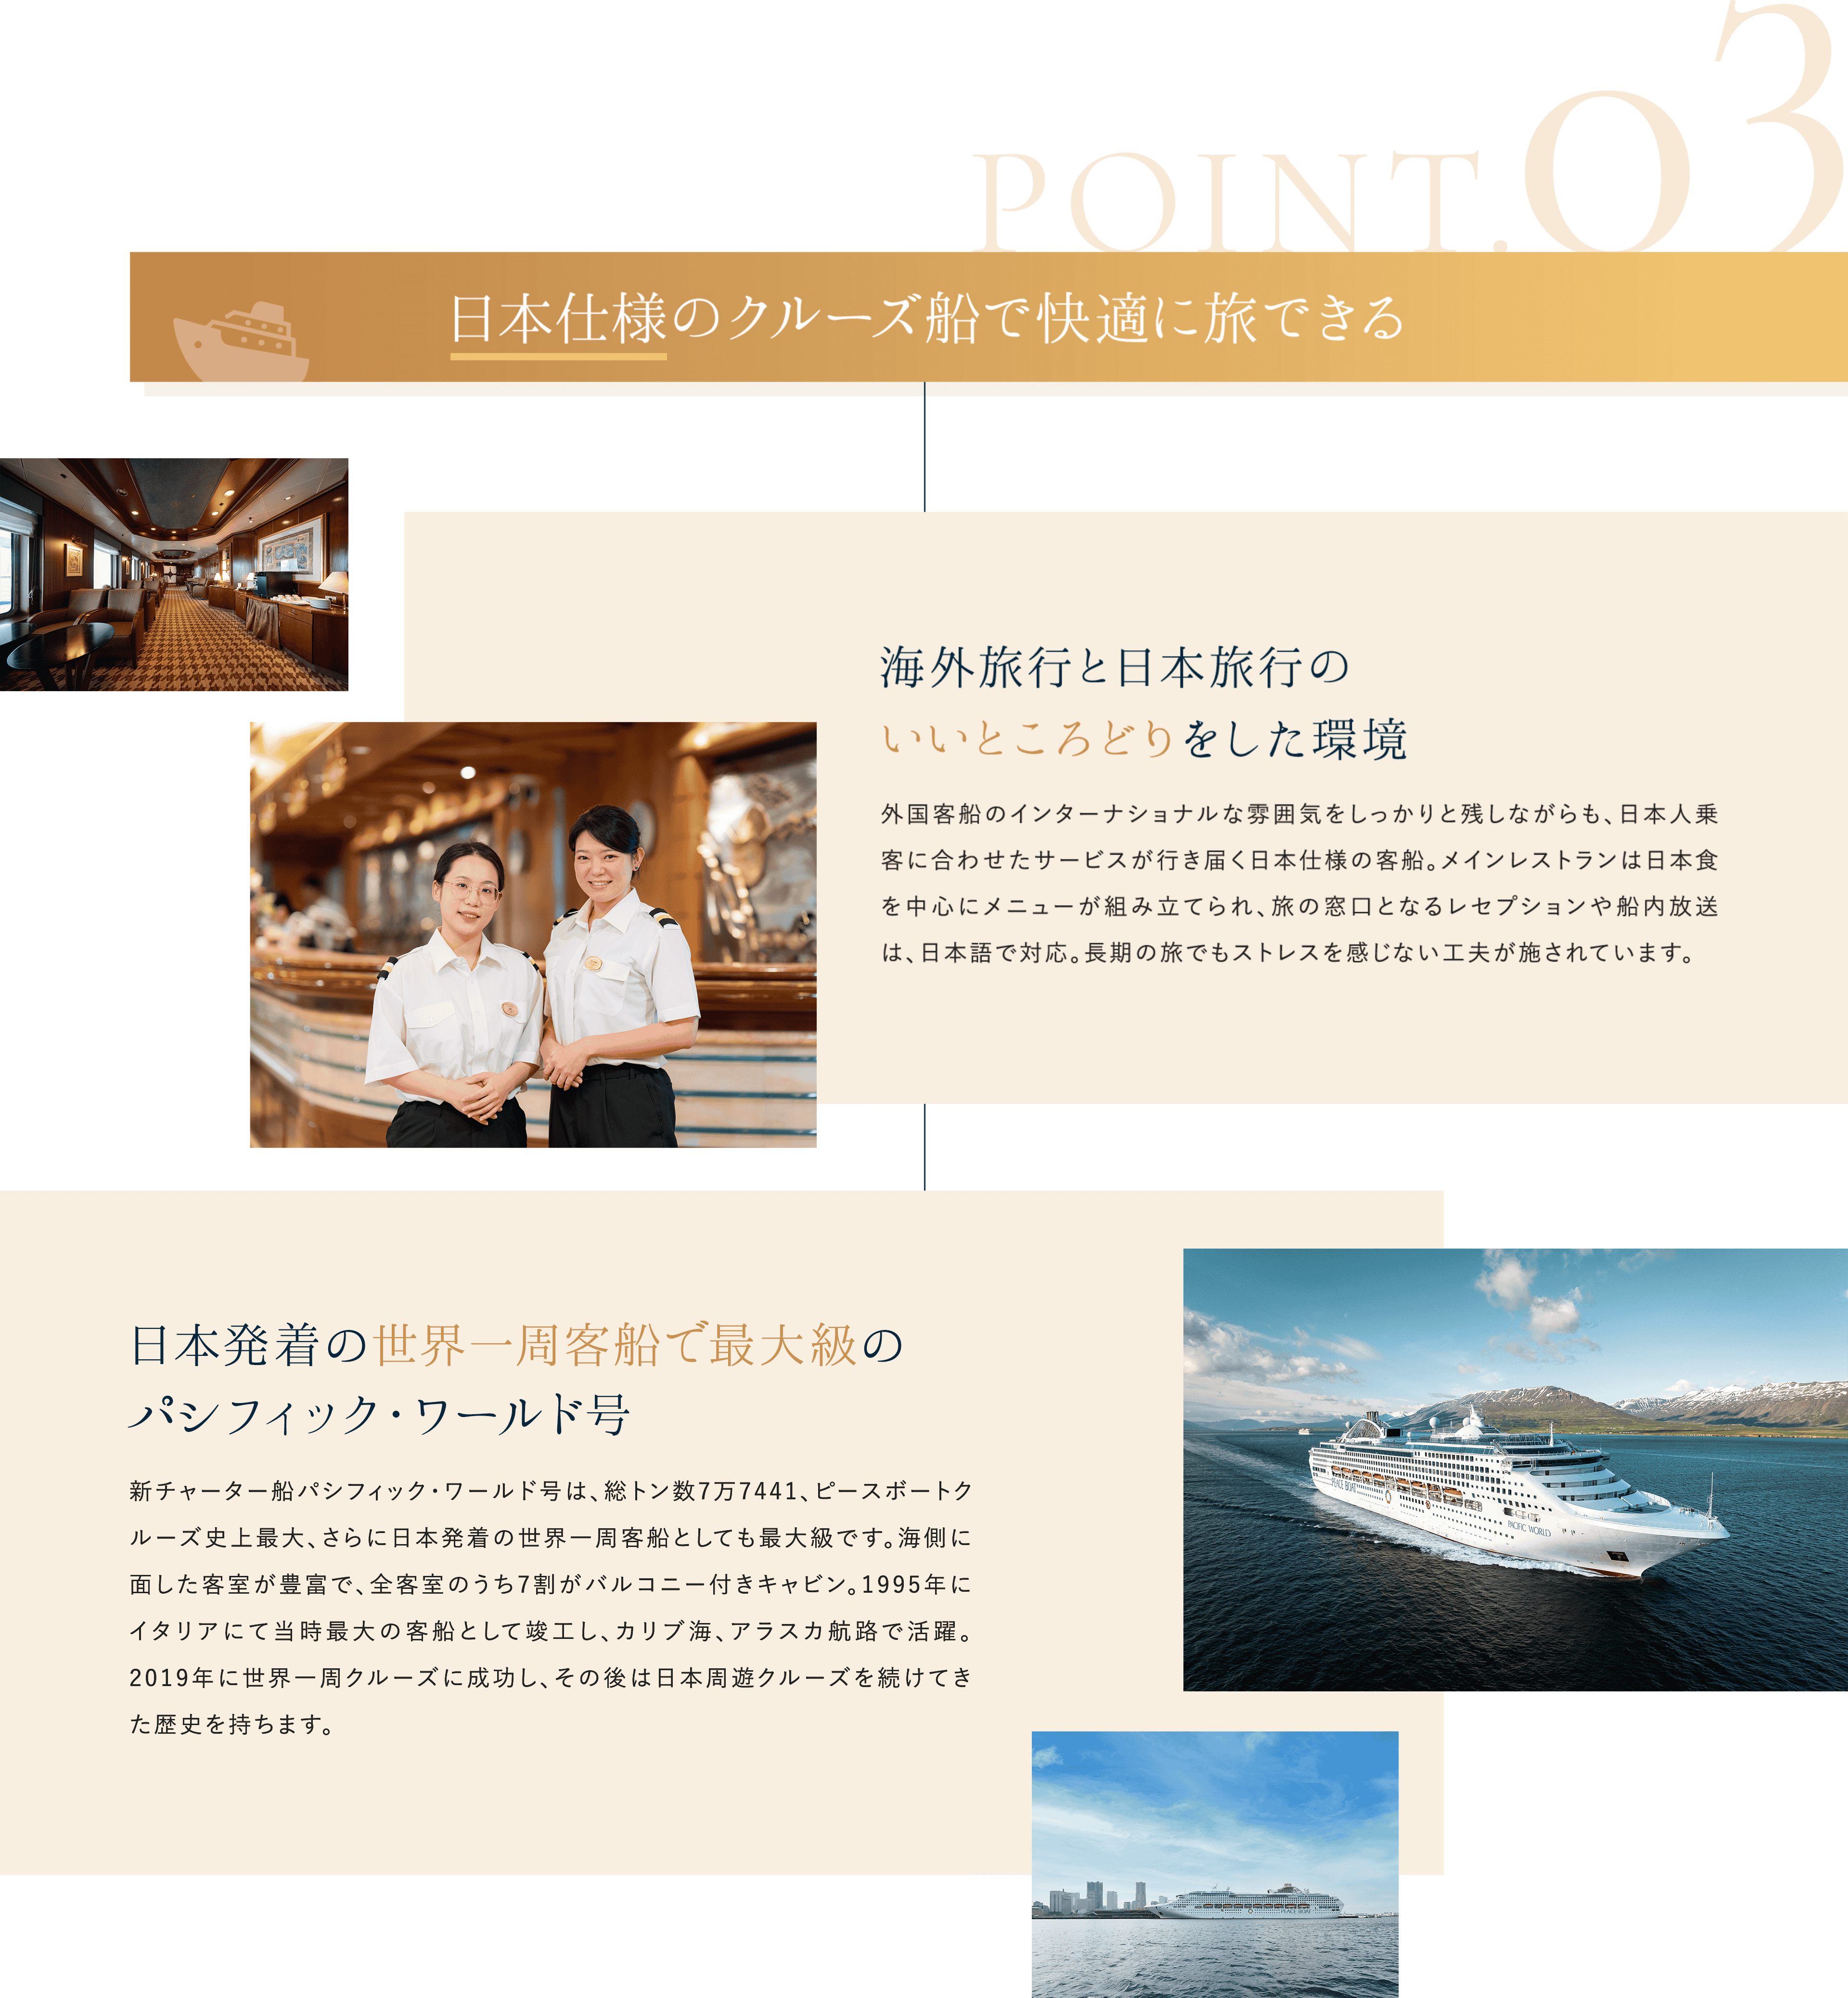 日本仕様のクルーズ船で快適に旅できる